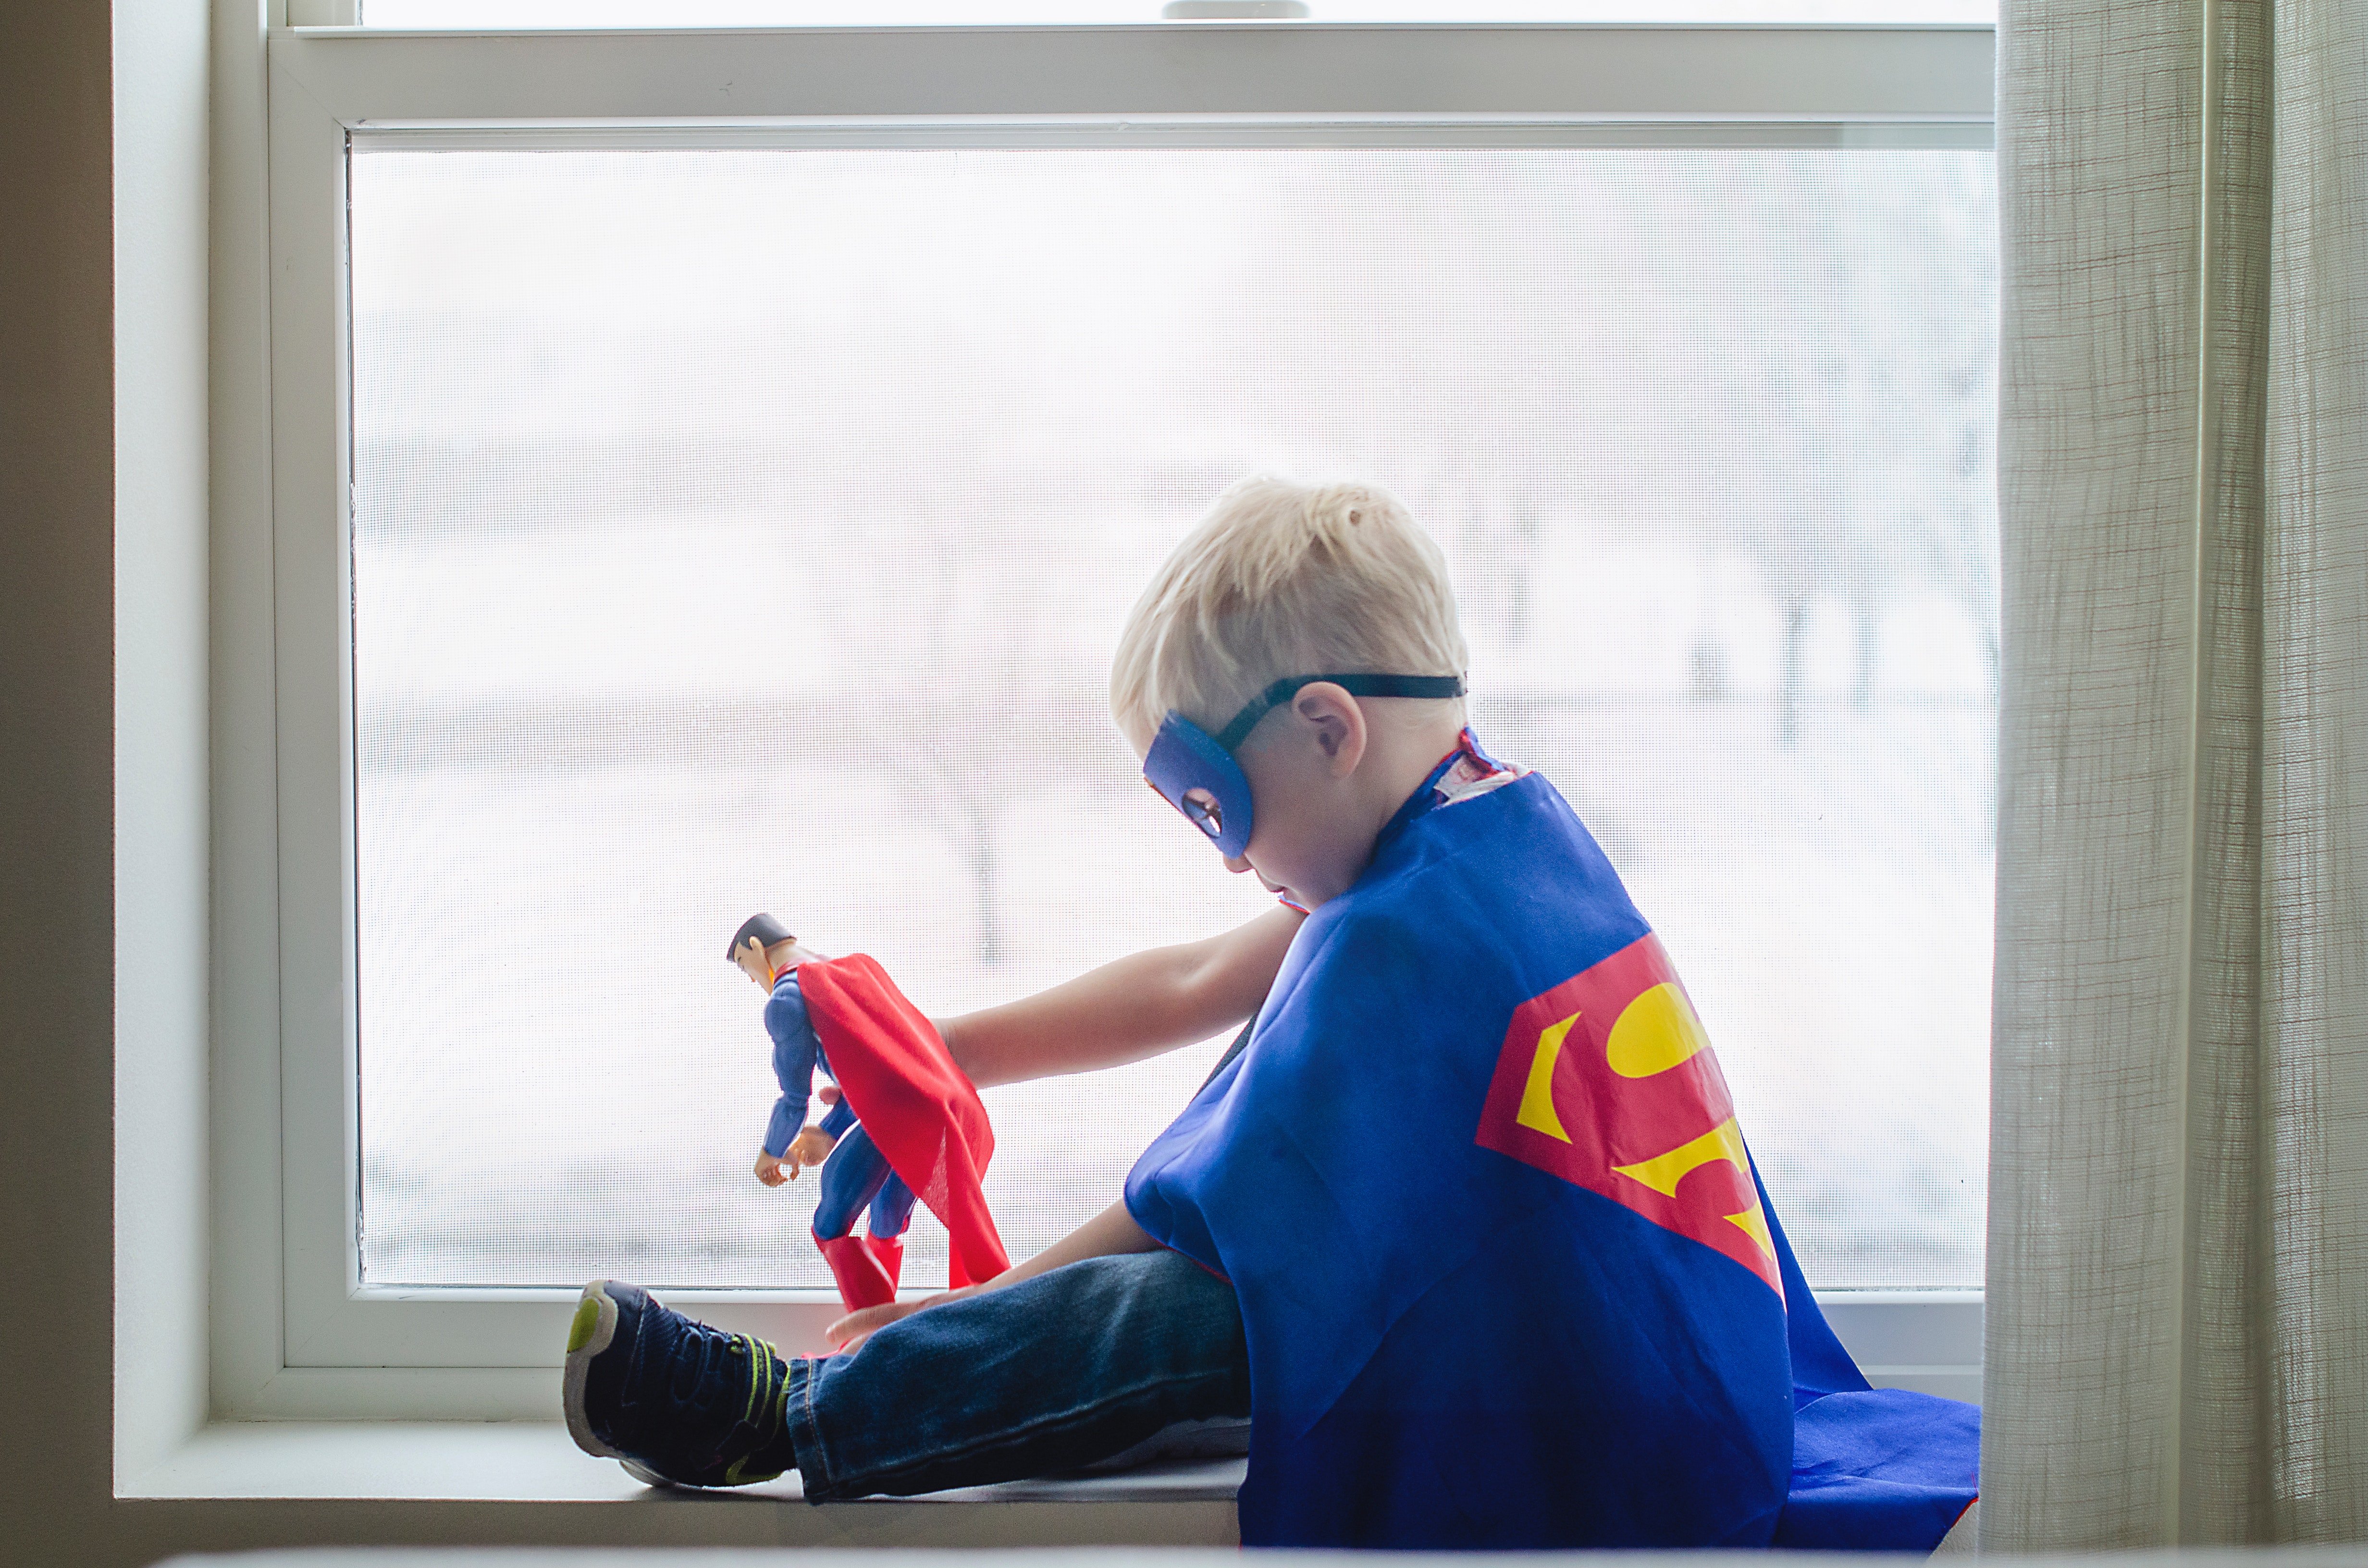 Growing up, Joe had always loved Superman. | Source: Pexels